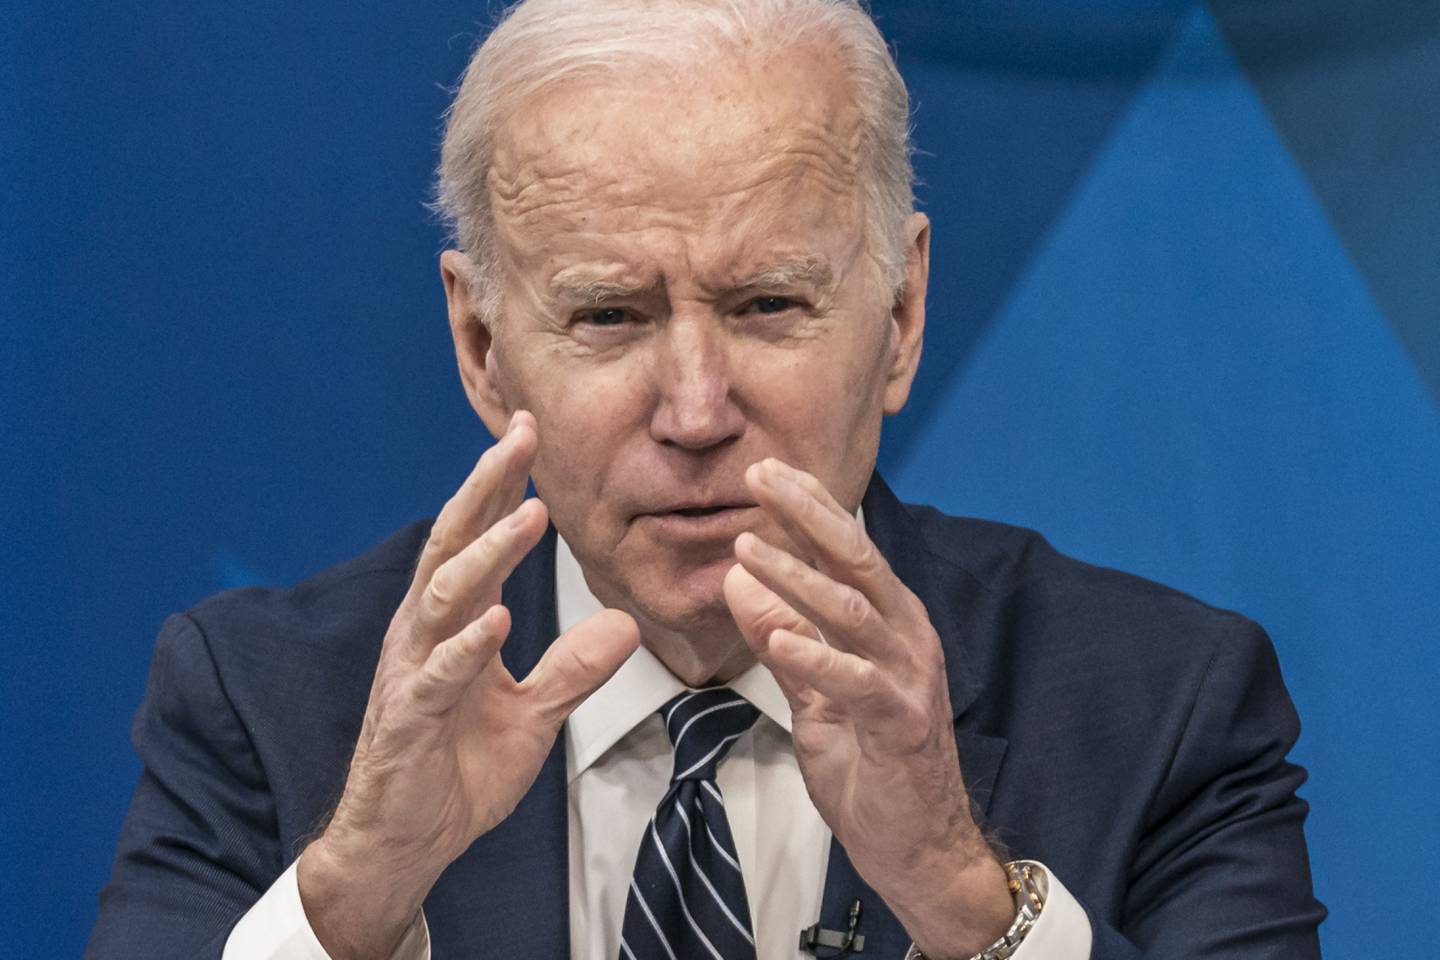 Biden todavía no ha tuiteado nada sobre el mercado, a pesar de una serie de récords en su primer año de mandato.